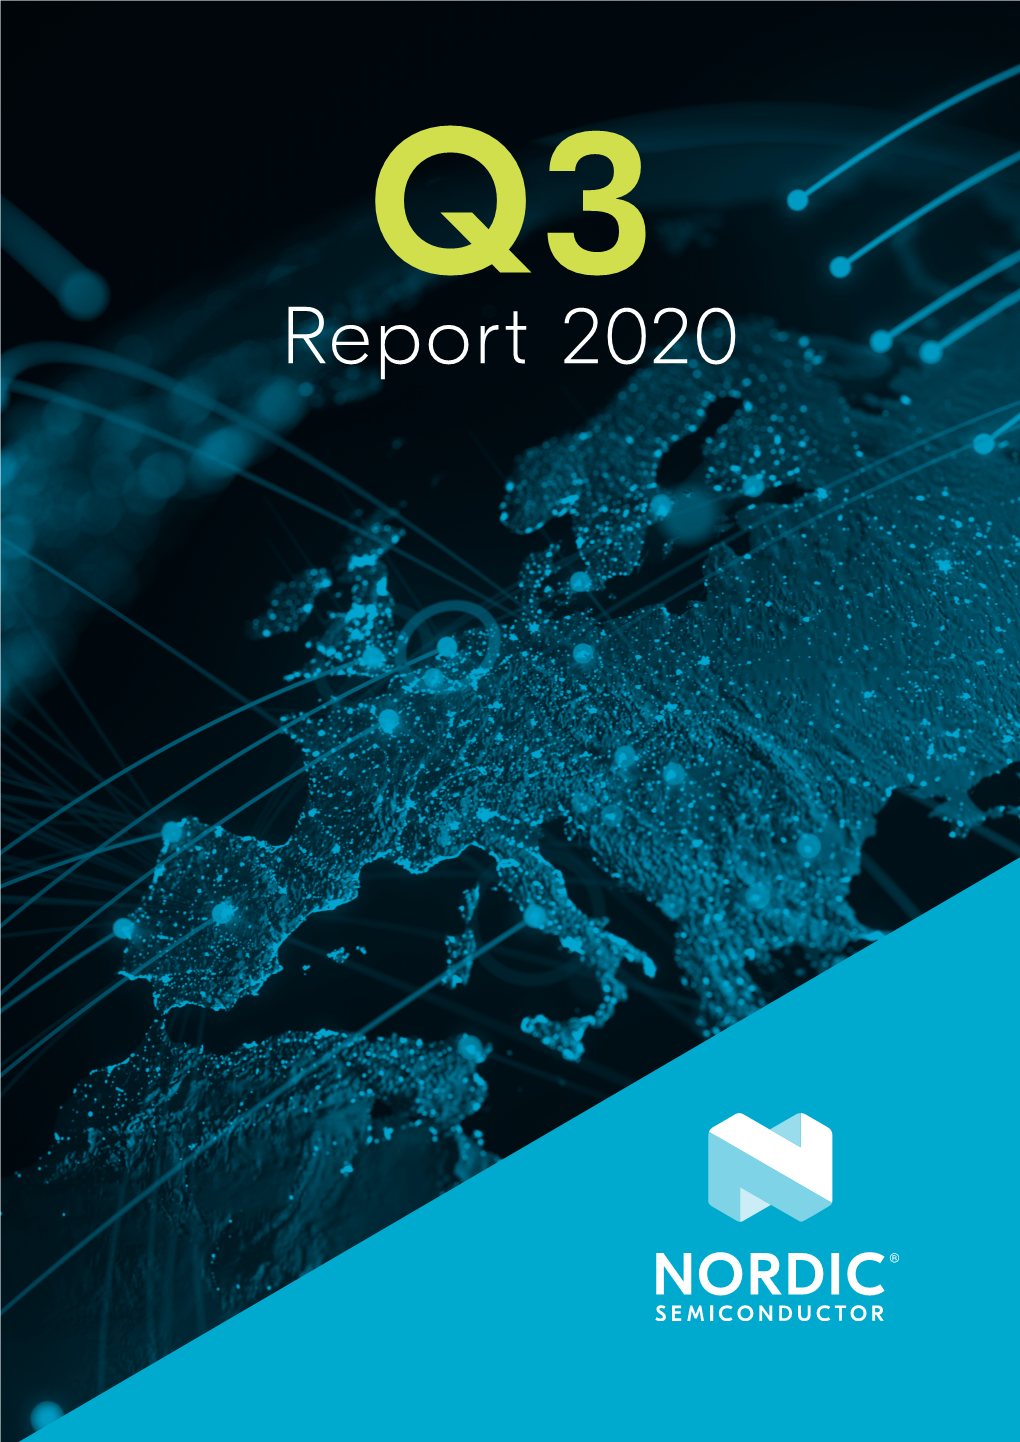 Report 2020 Content